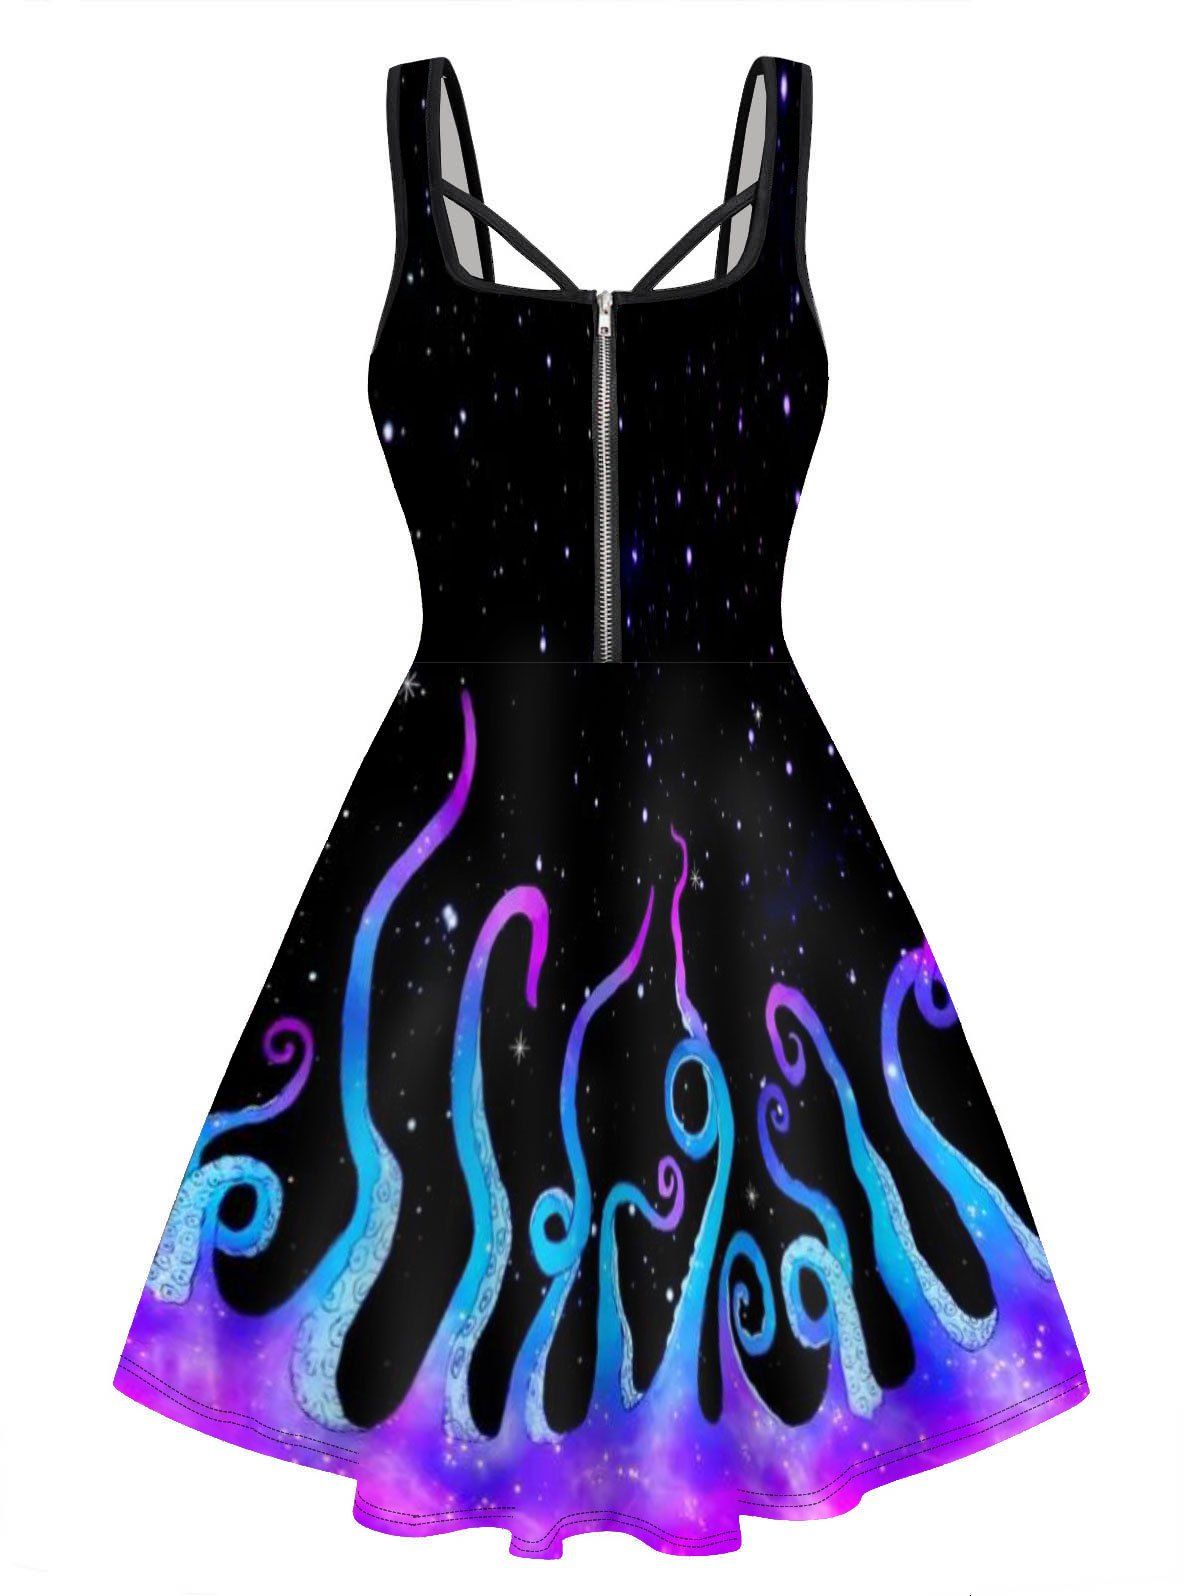 Galaxy Octopus Print Mini Dress Half Zipper Sleeveless A Line Cami Dress - PURPLE M